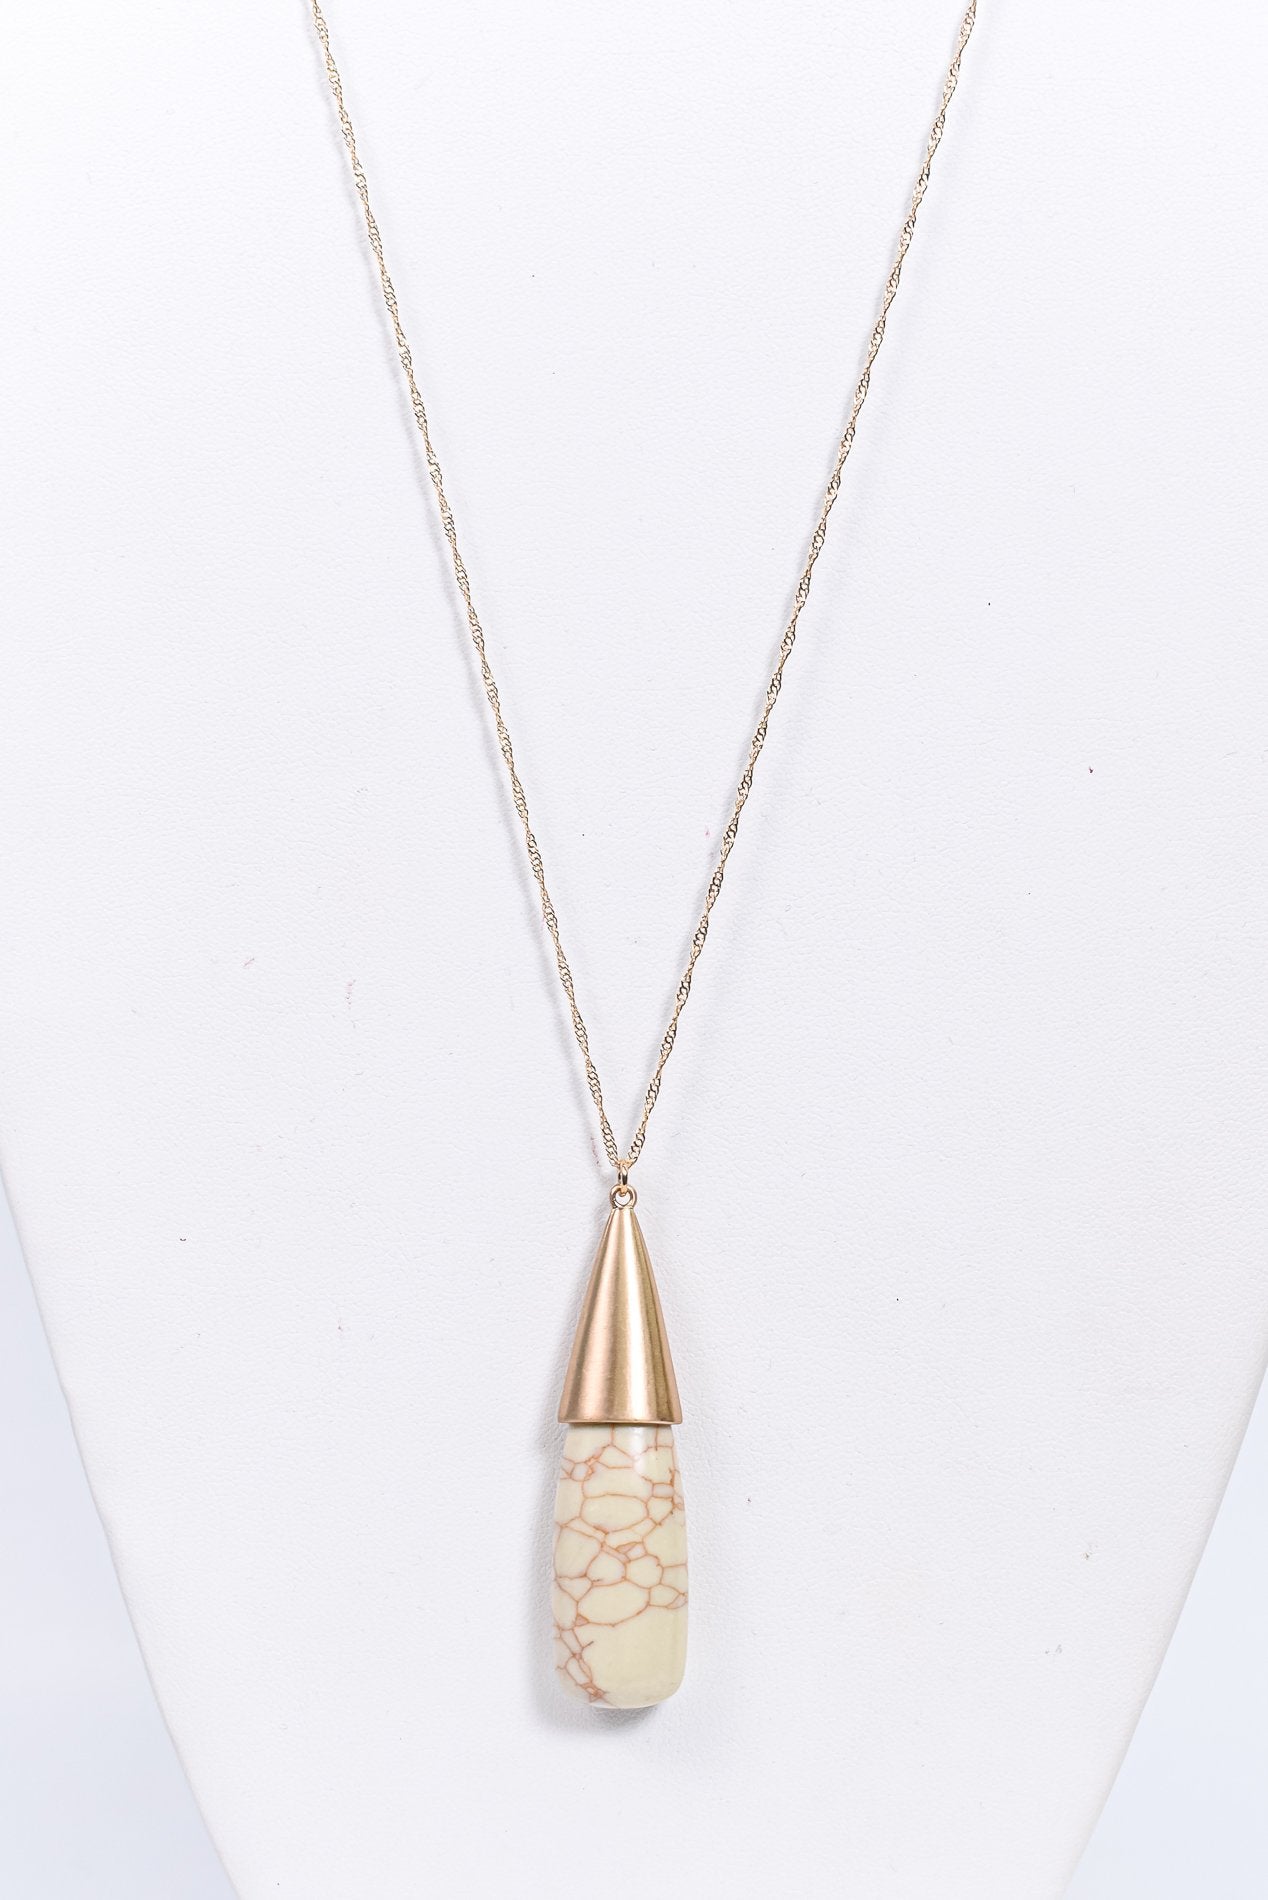 Gold/Ivory Marble/Stone Pendant Necklace - NEK3750GO